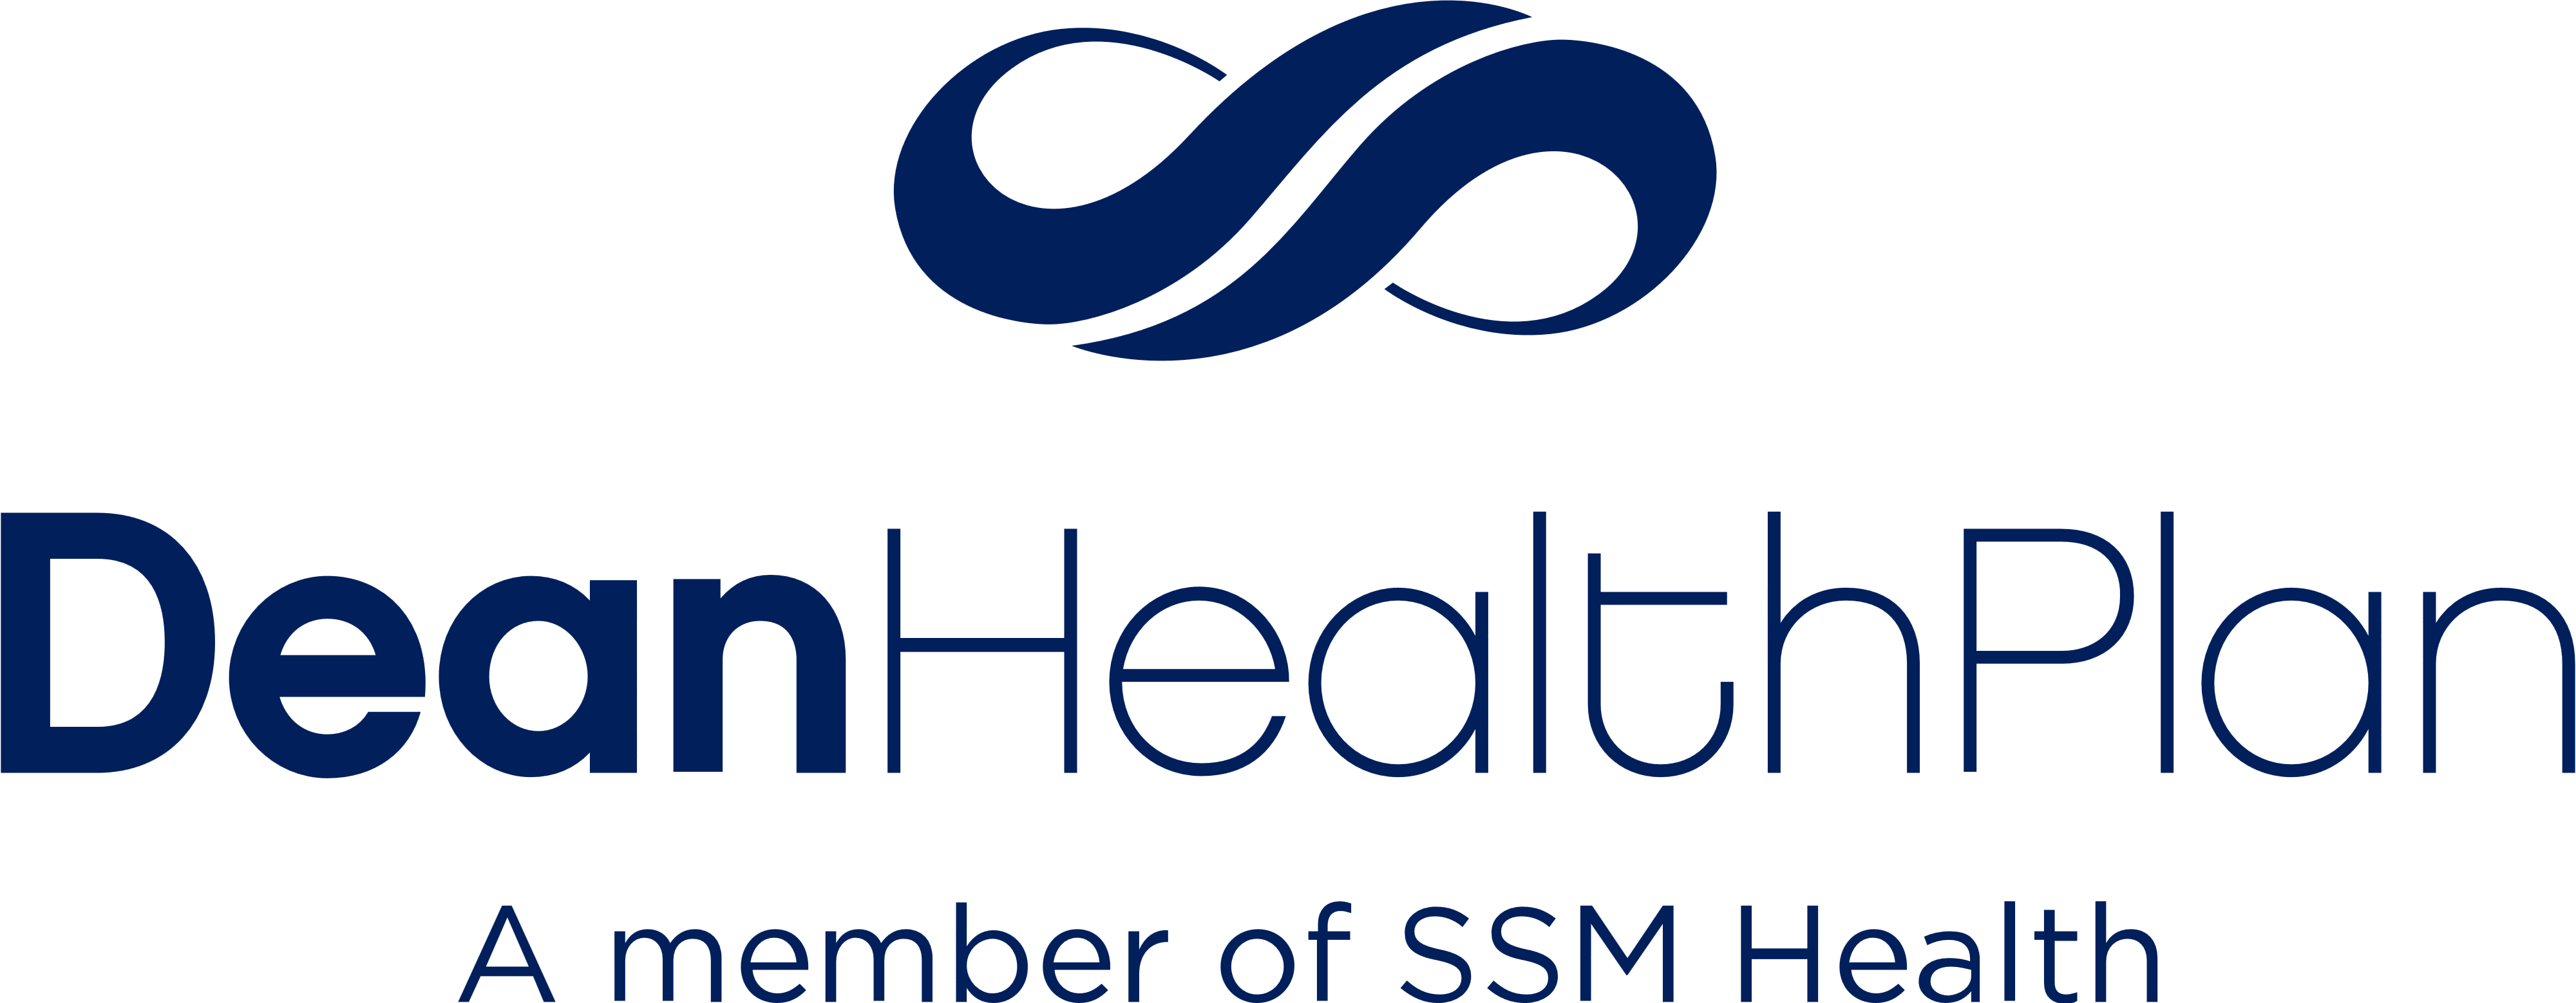 Dean Logo - Dean Health Plan